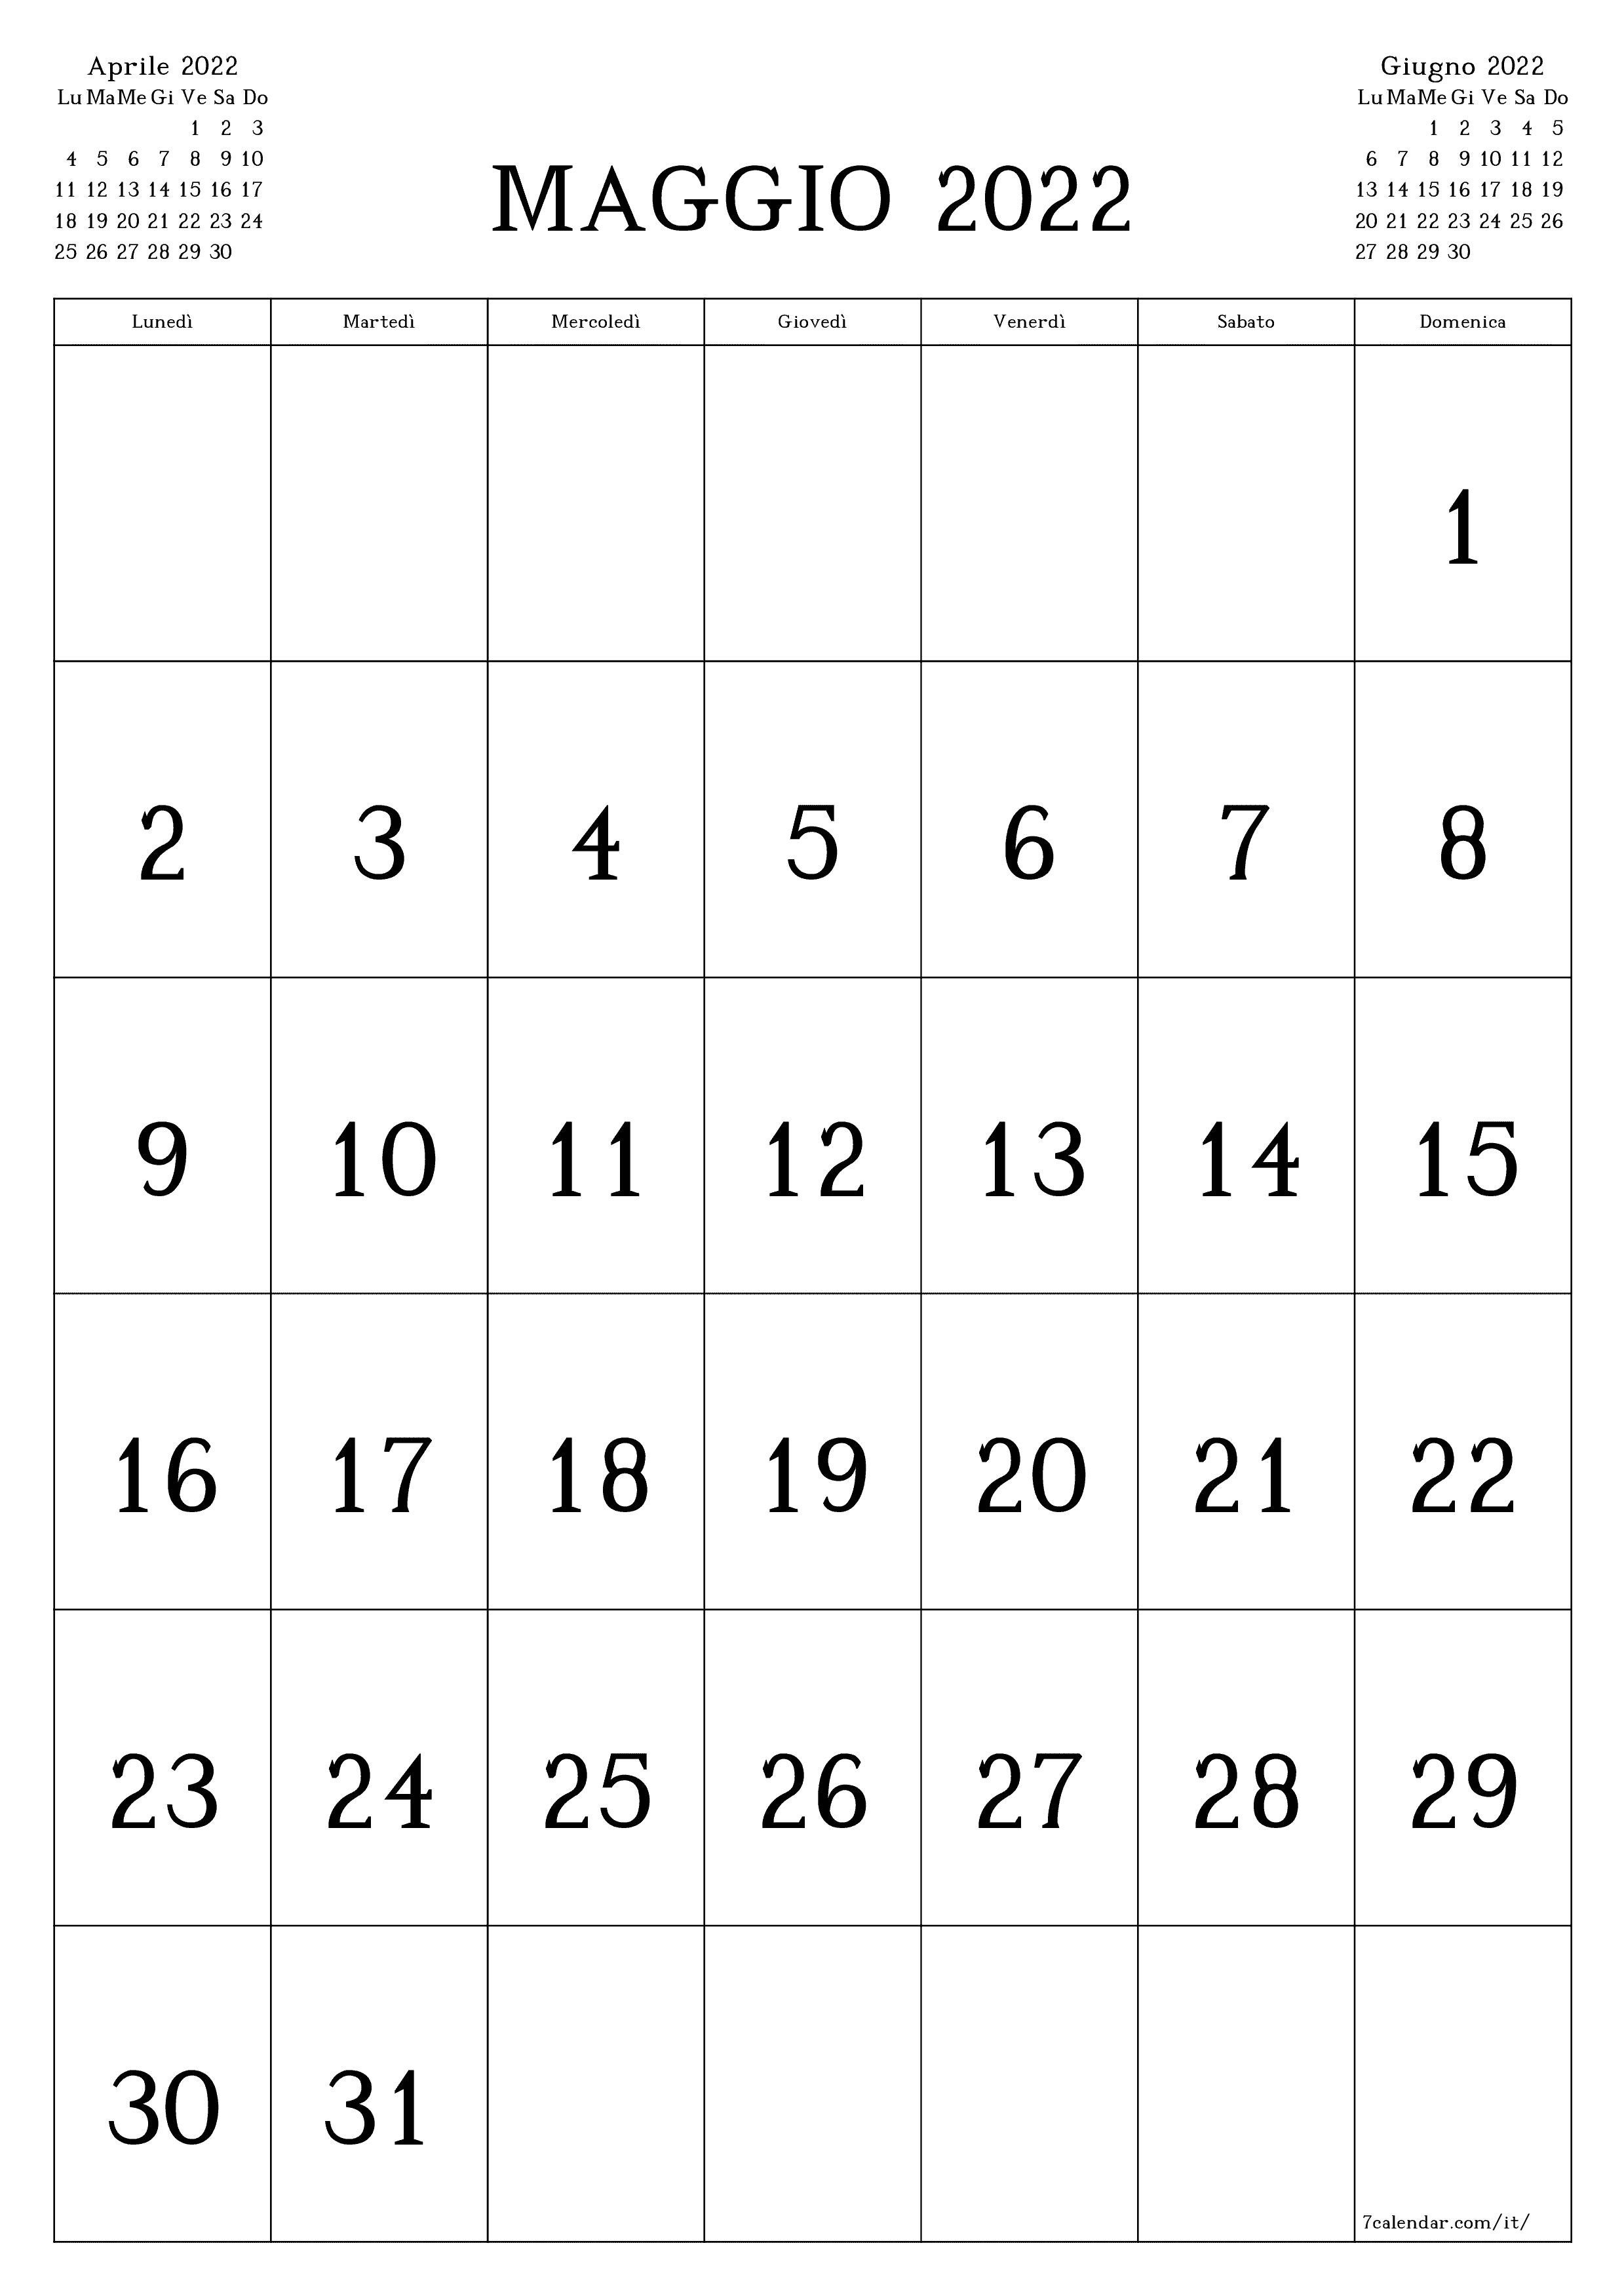 Calendario mensile vuoto per il mese Maggio 2022 salva e stampa in PDF PNG Italian - 7calendar.com